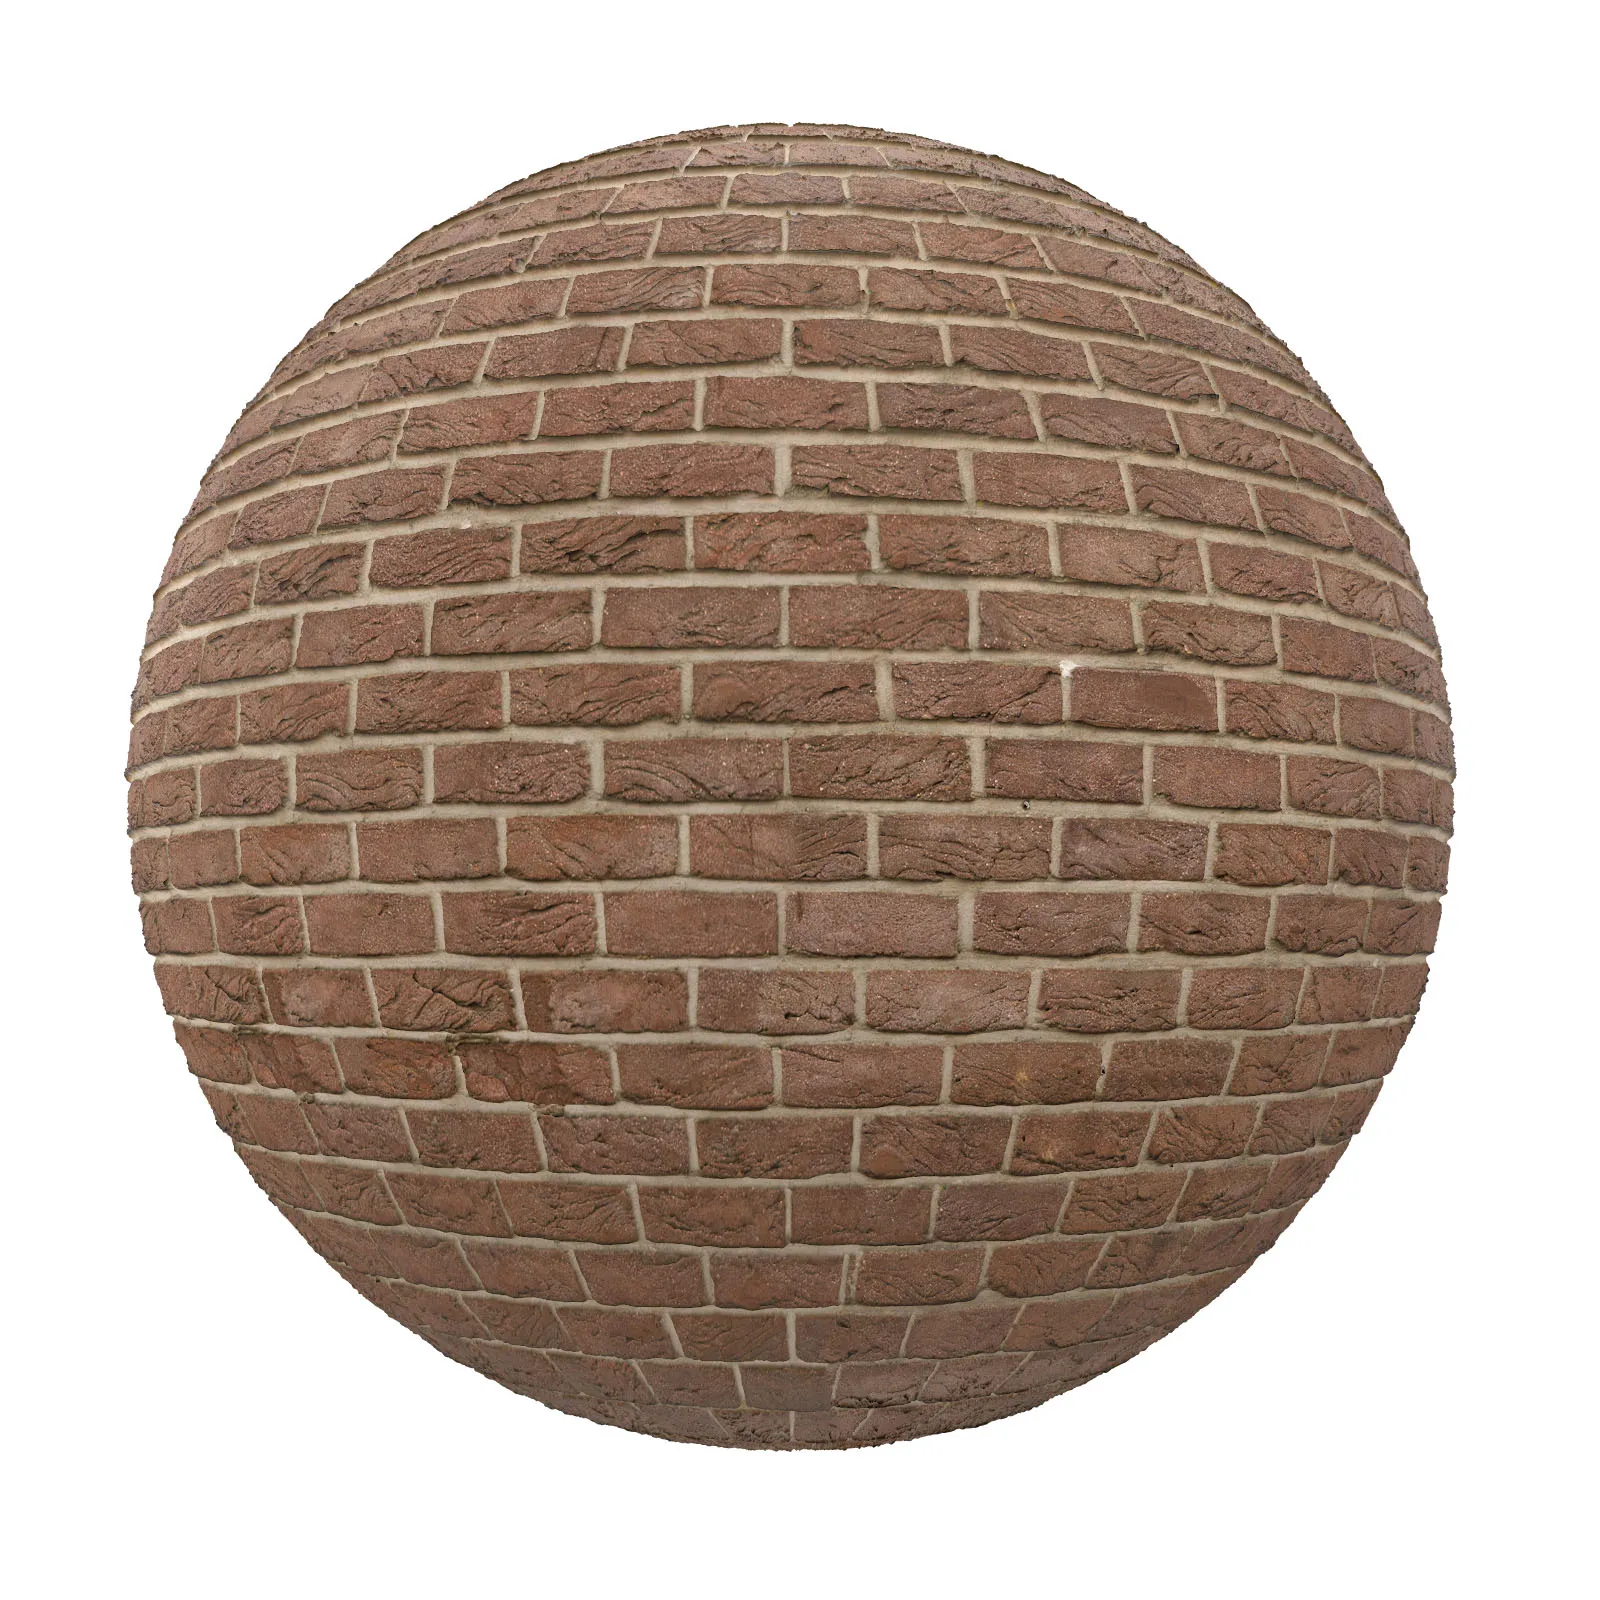 PBR CGAXIS TEXTURES – BRICK – Brown Brick Wall 9